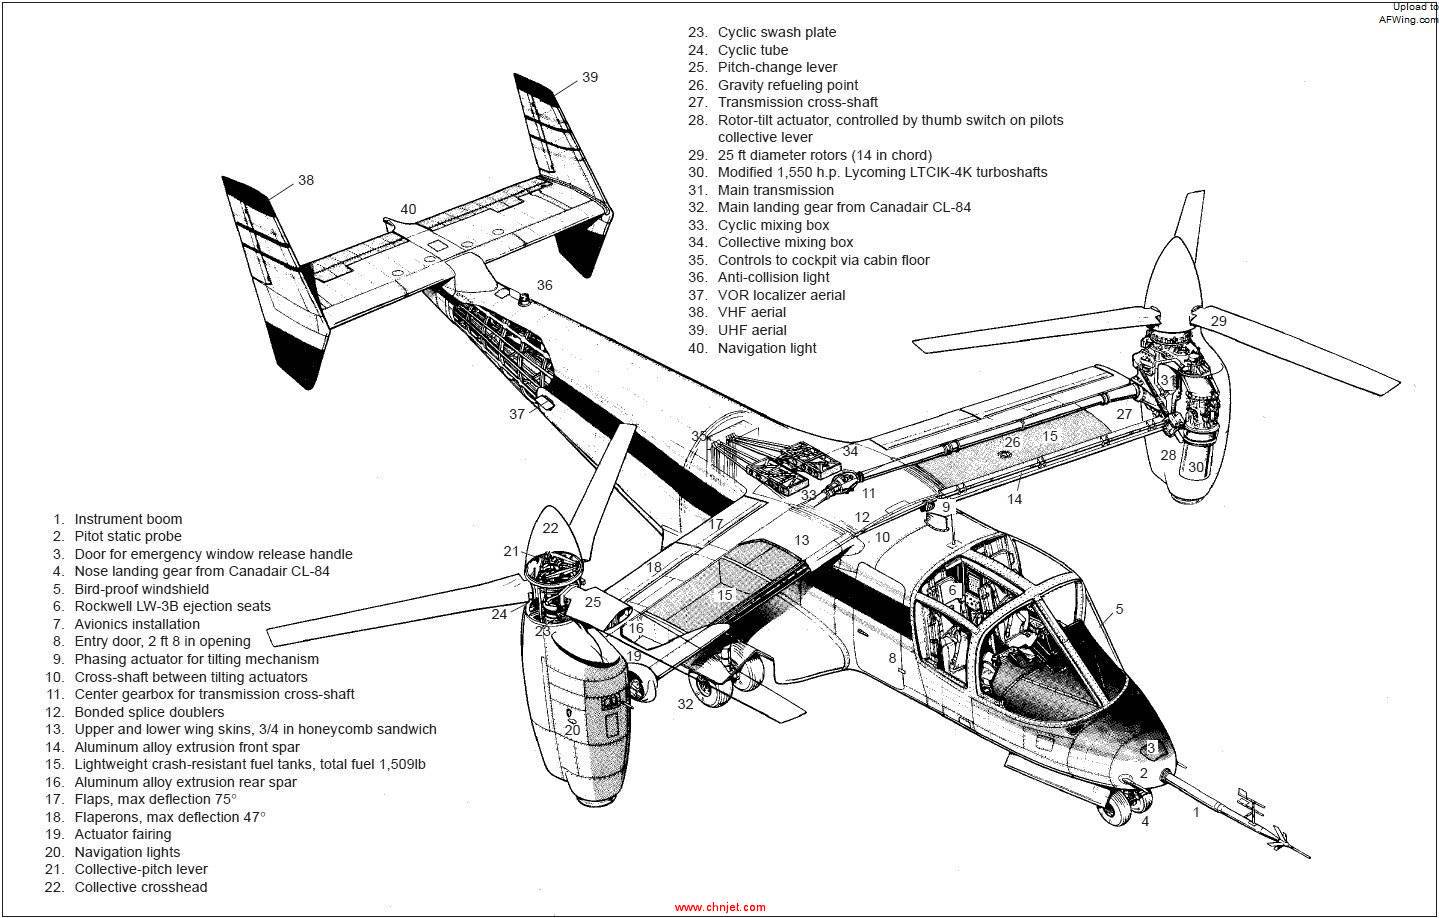 Bell_XV-15_tilt_rotor_research_aircraft.jpg